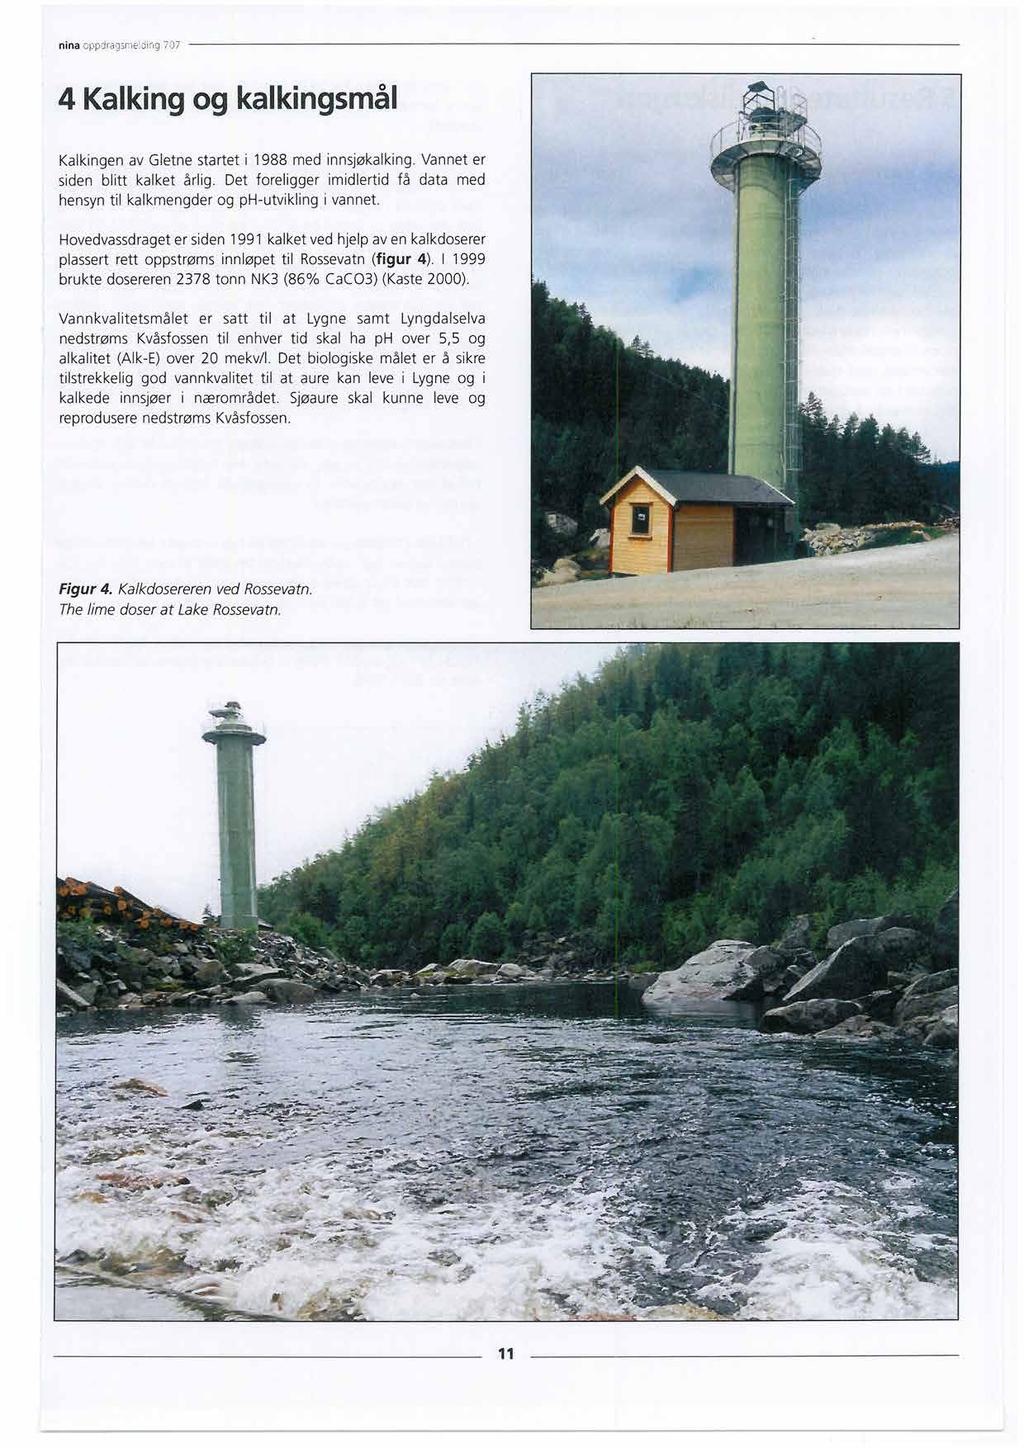 nina oppjiagsmejing 707 4 Kalkingog kalkingsmål Kalkingen av Gletne startet i 1988 med innsjøkalking. Vannet er siden blitt kalket årlig.